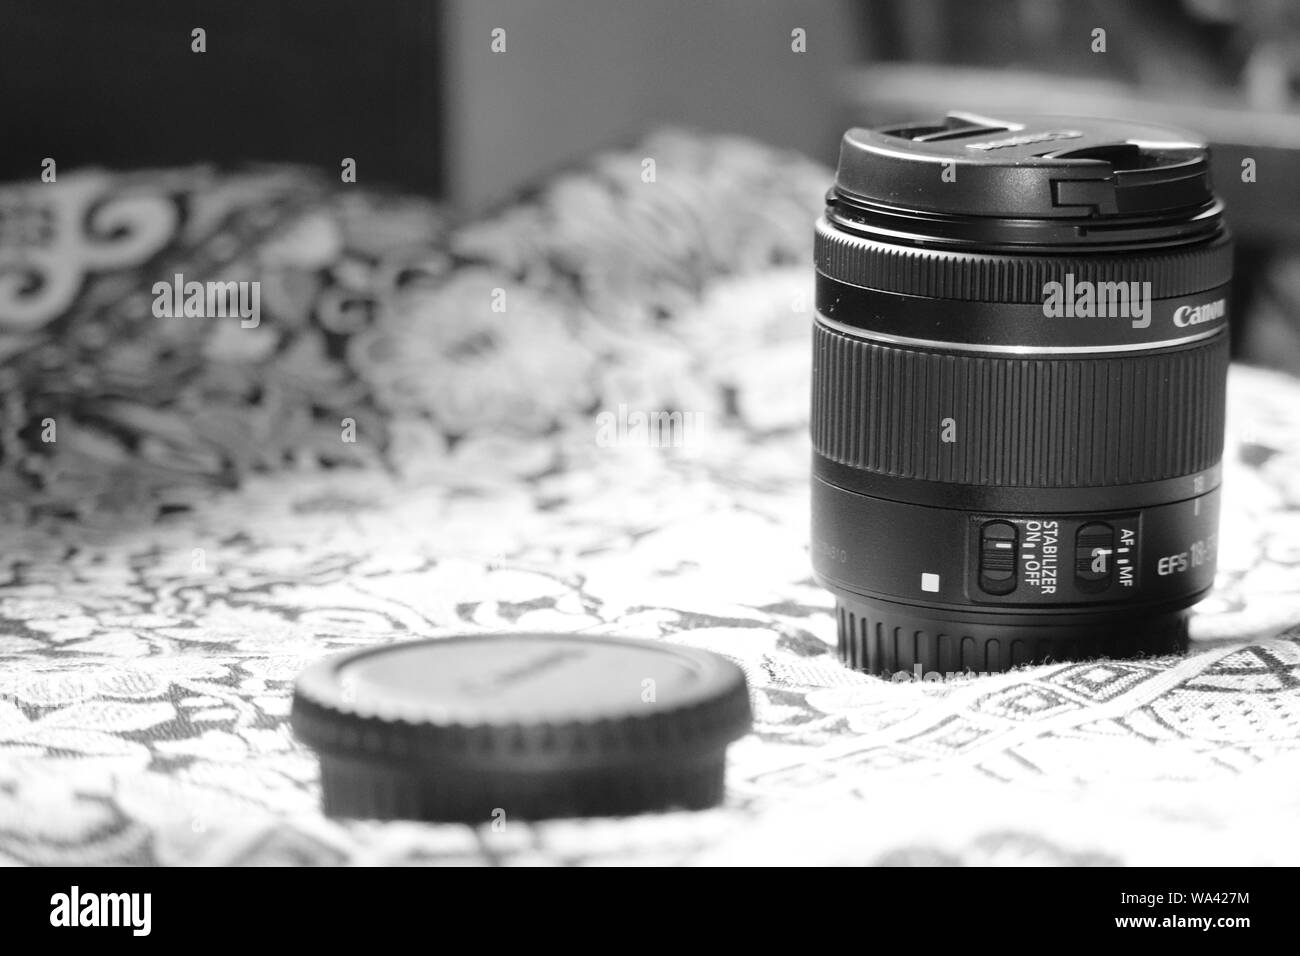 lense of my camera Stock Photo